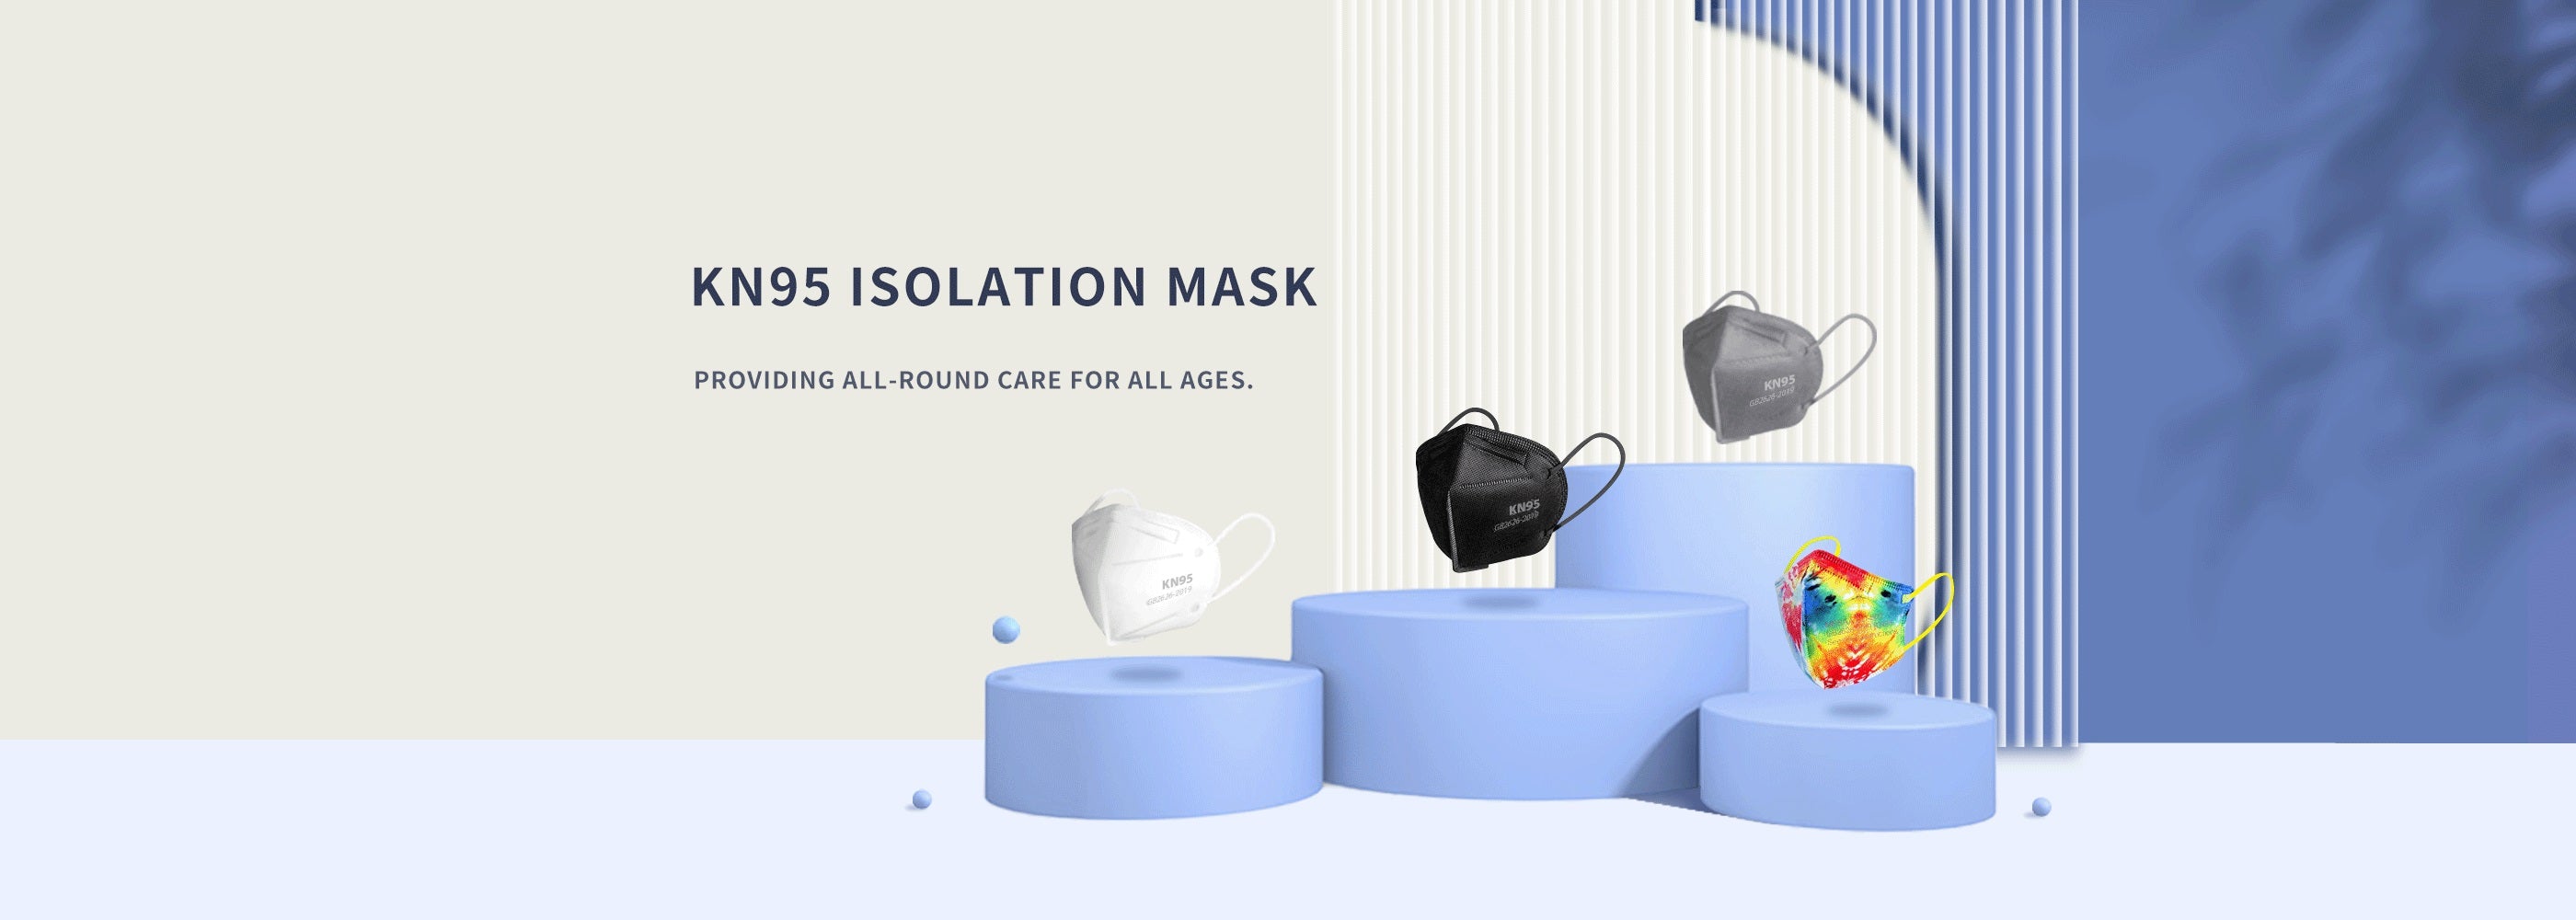 kn95 isolation mask